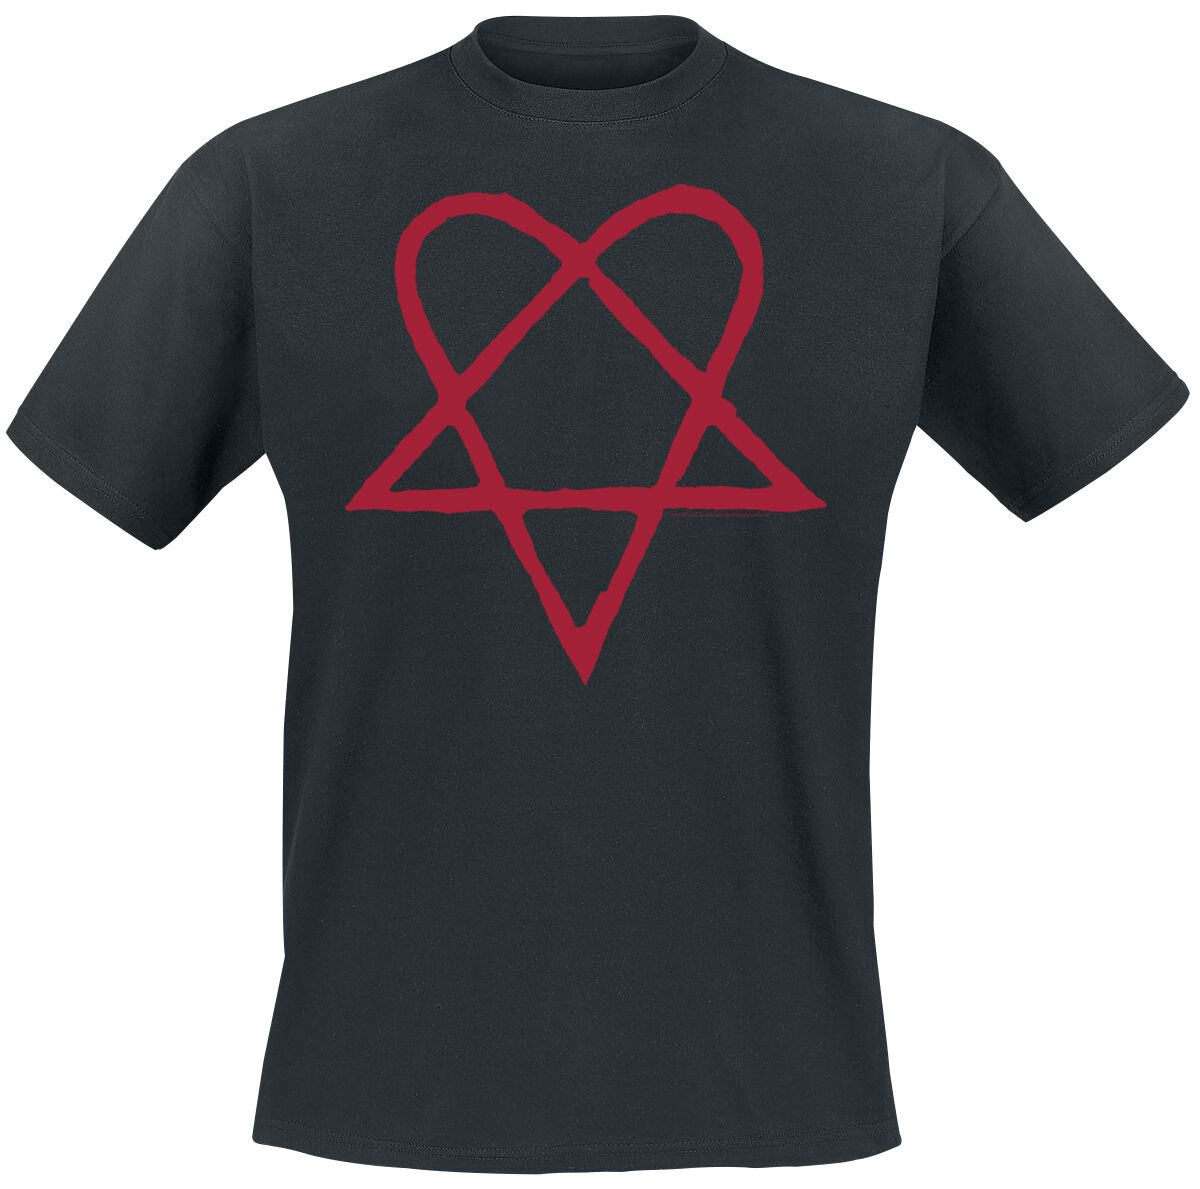 HIM T-Shirt - Dark Red Heartagram - S bis 4XL - für Männer - Größe M - schwarz  - Lizenziertes Merchandise!